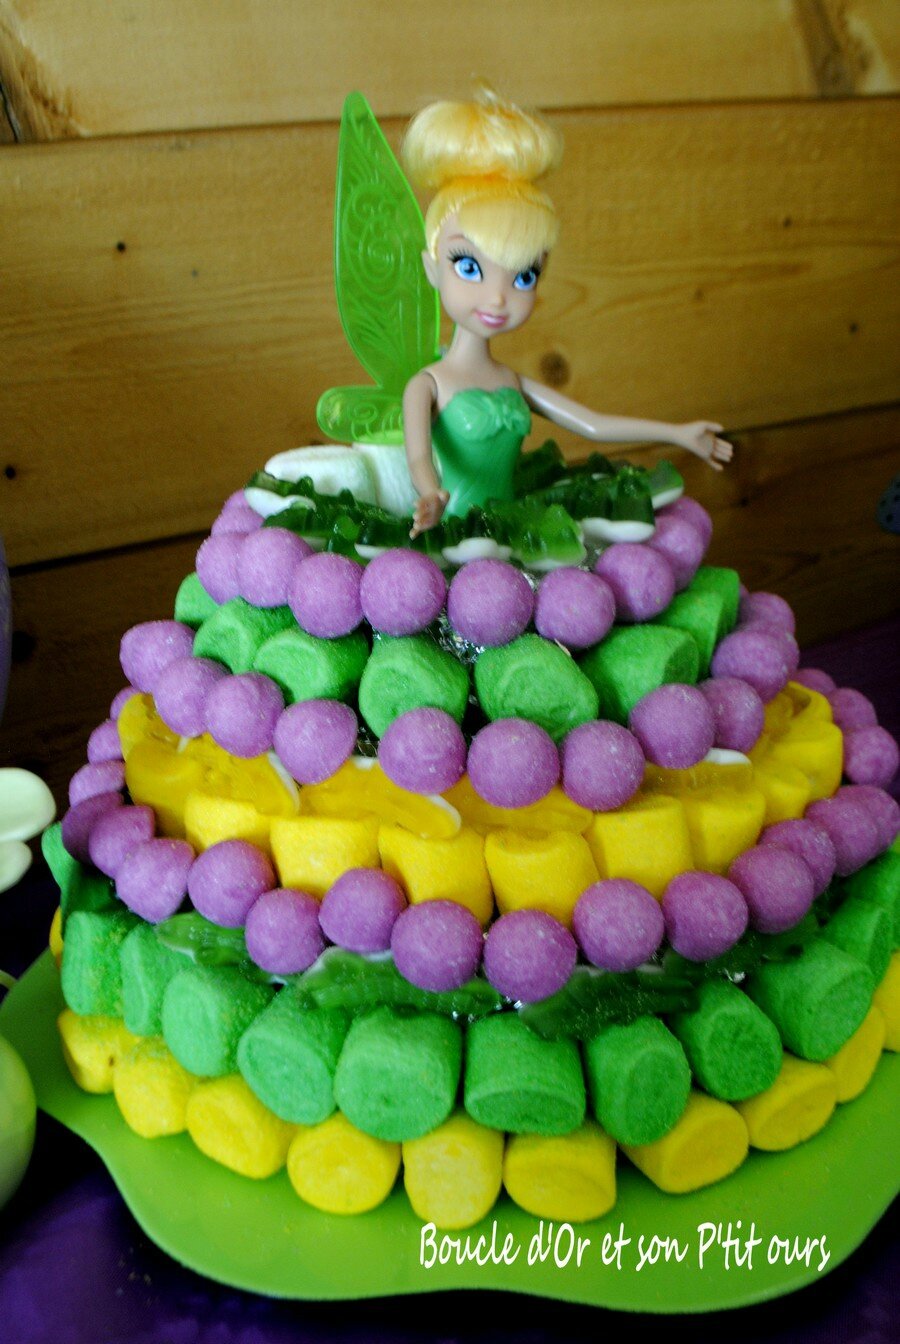 Construction d'un gâteau de bonbons pour un anniversaire coin-coin !!! -  Recette Ptitchef, Recette